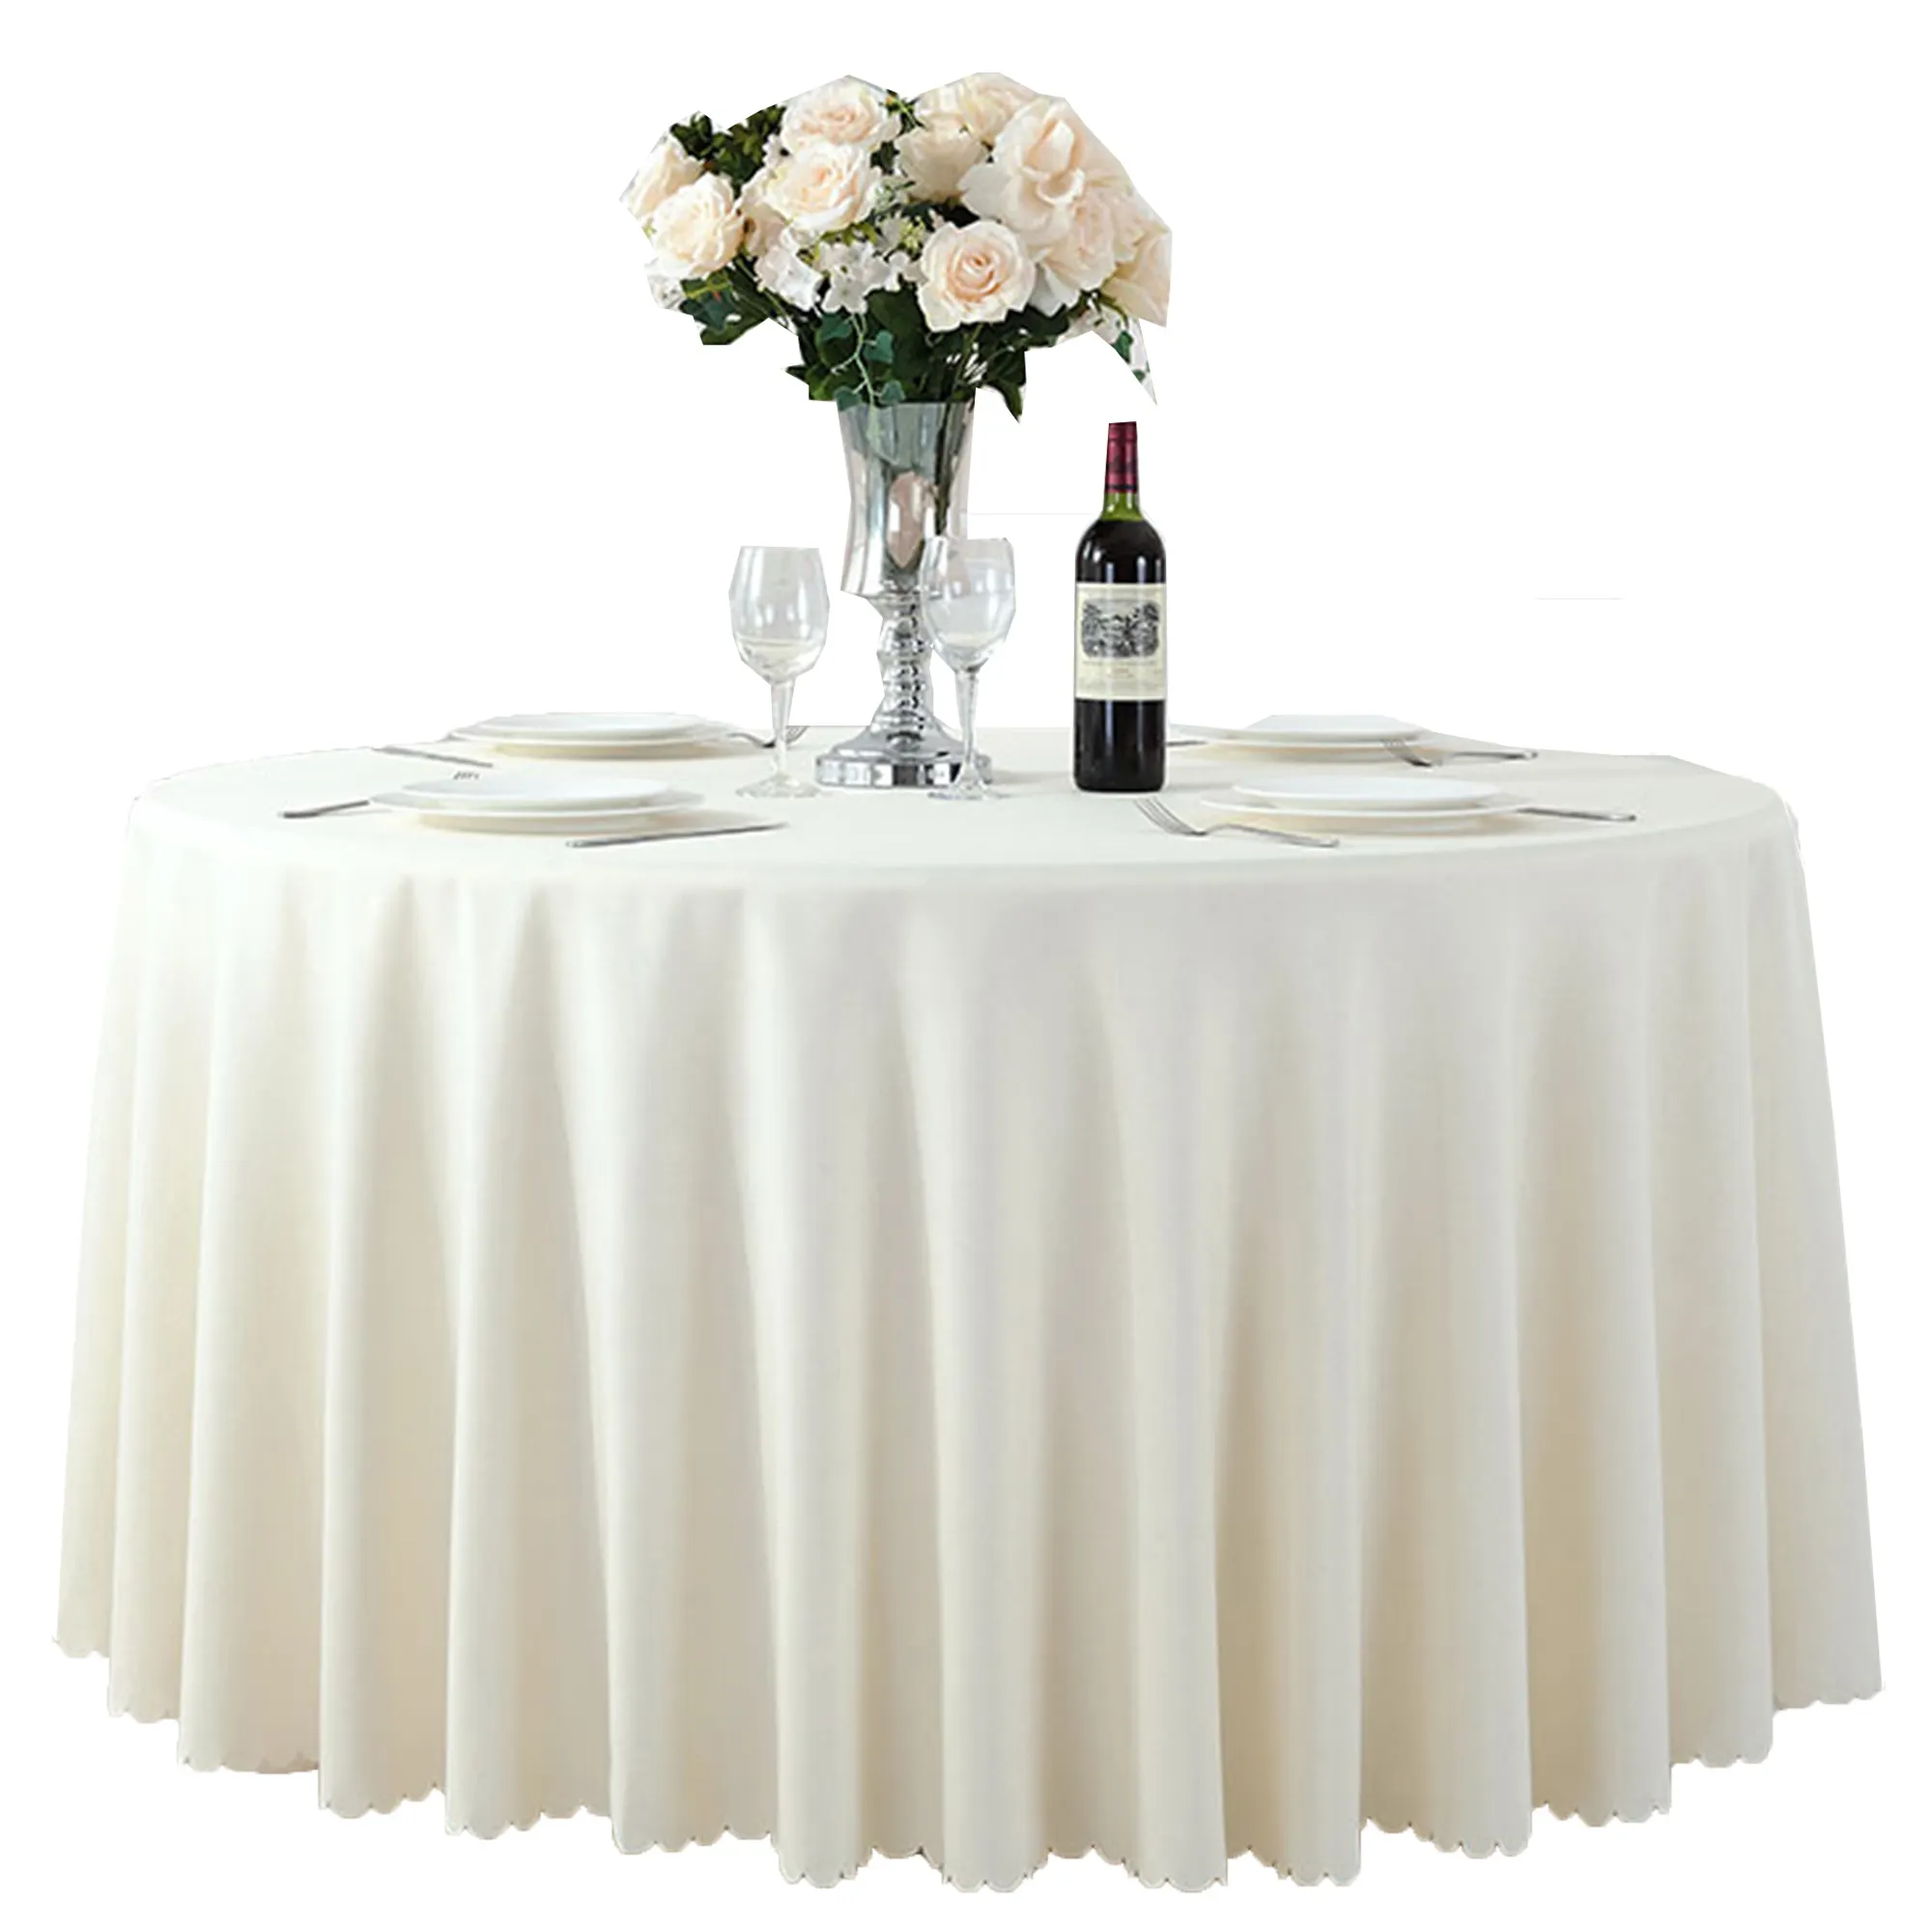 Круглая скатерть из ткани цвета слоновой кости, 120 дюйма, белая скатерть для свадьбы